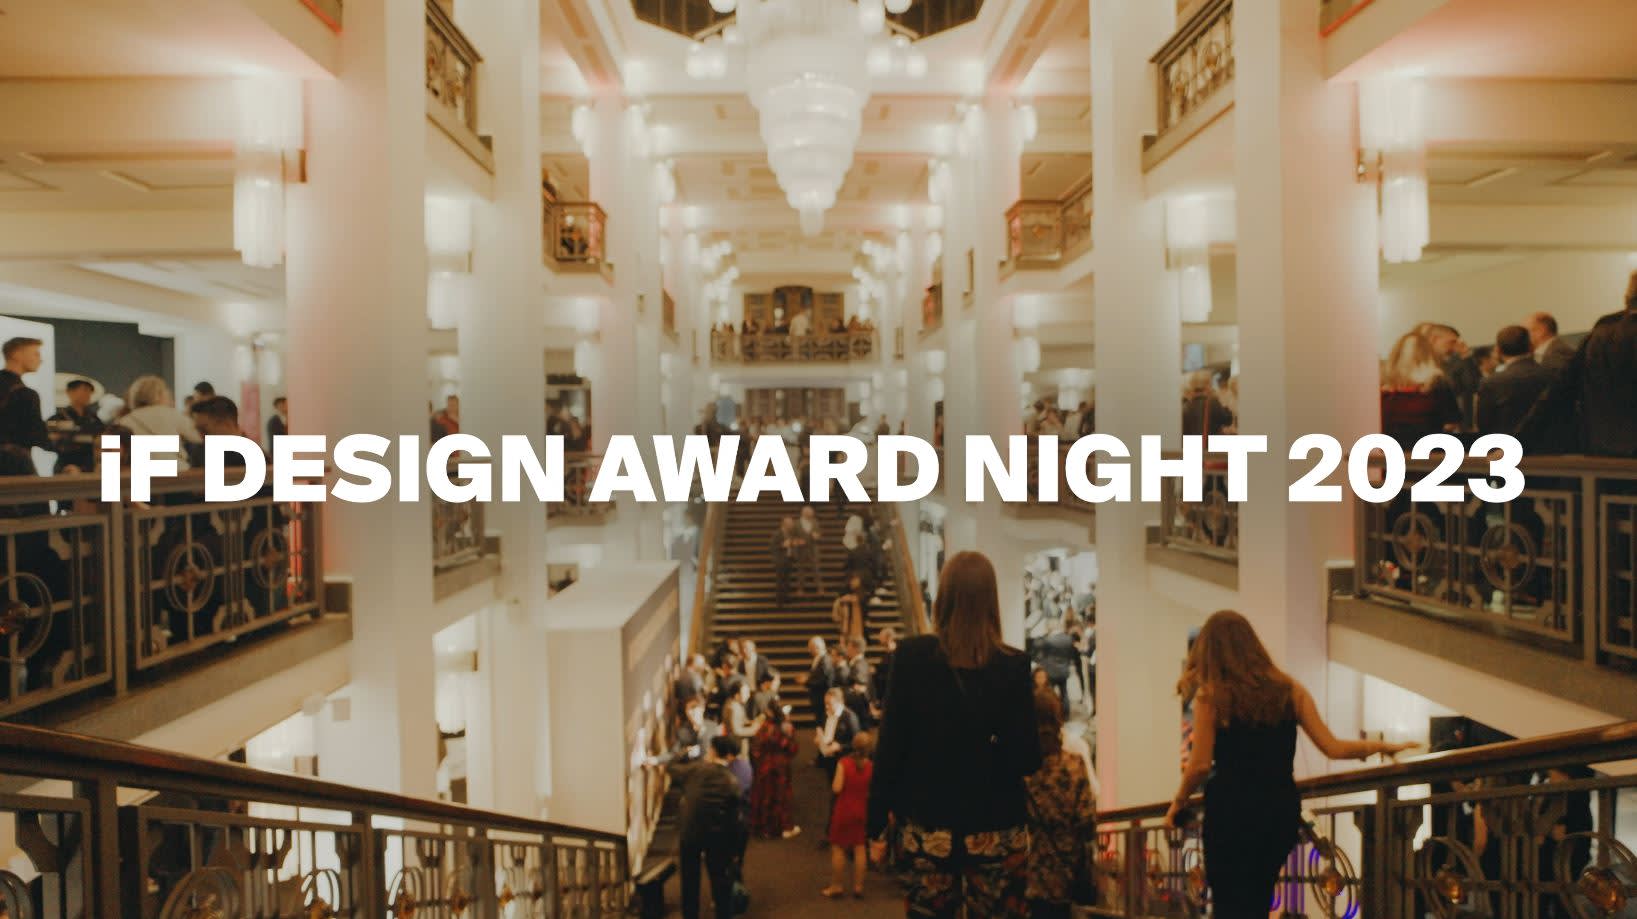 iF Design Award Night 2023 - what an incredible gala!